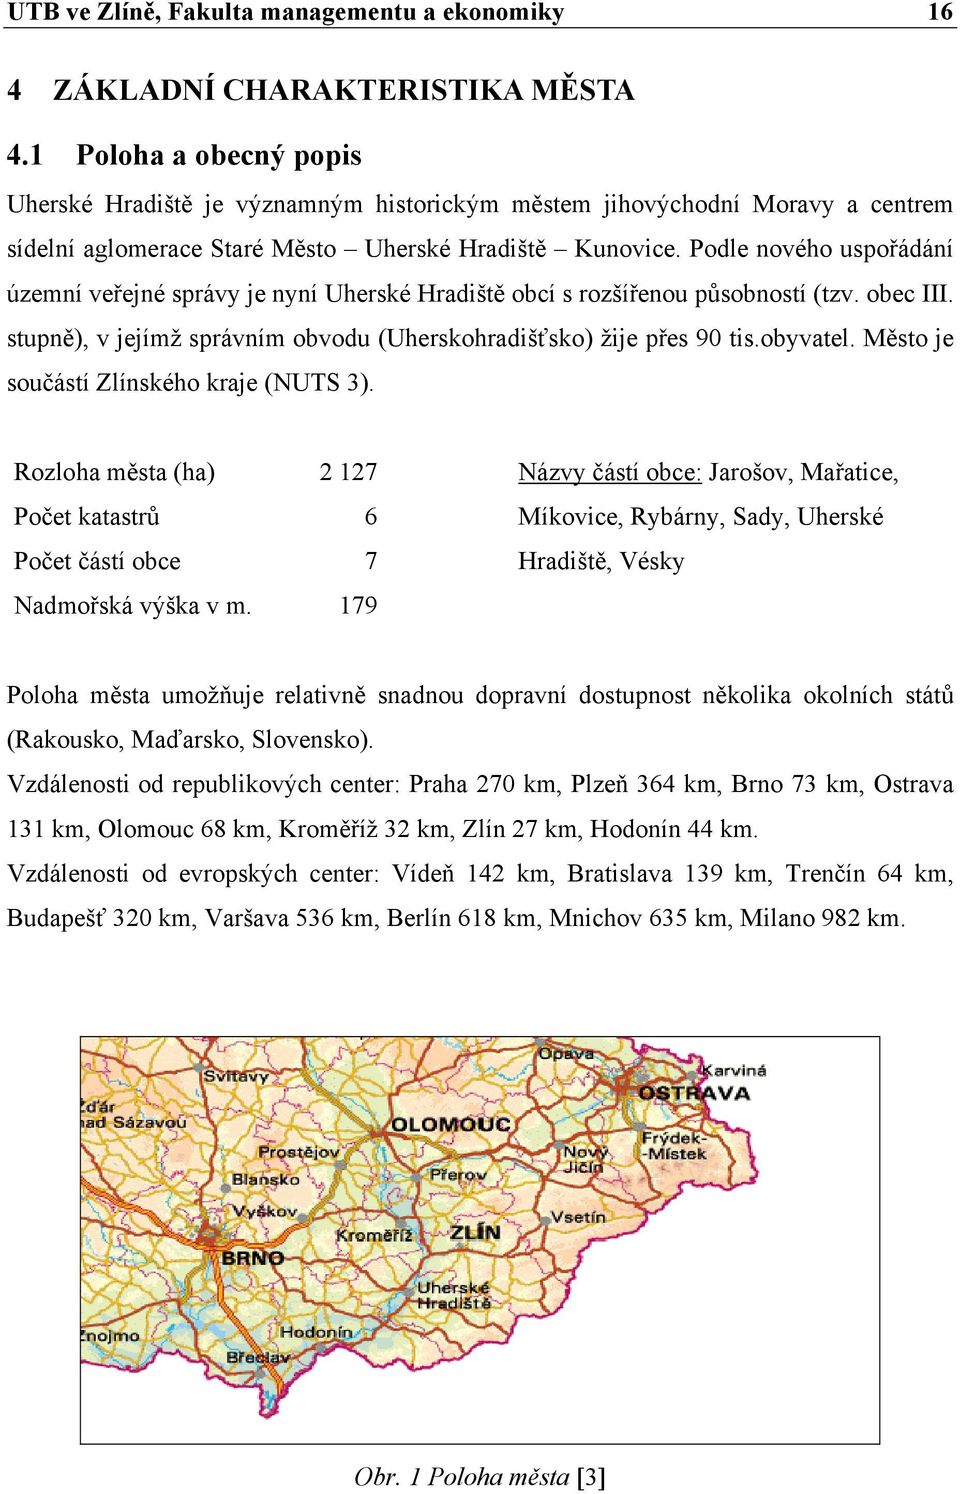 Podle nového uspořádání územní veřejné správy je nyní Uherské Hradiště obcí s rozšířenou působností (tzv. obec III. stupně), v jejímž správním obvodu (Uherskohradišťsko) žije přes 90 tis.obyvatel.